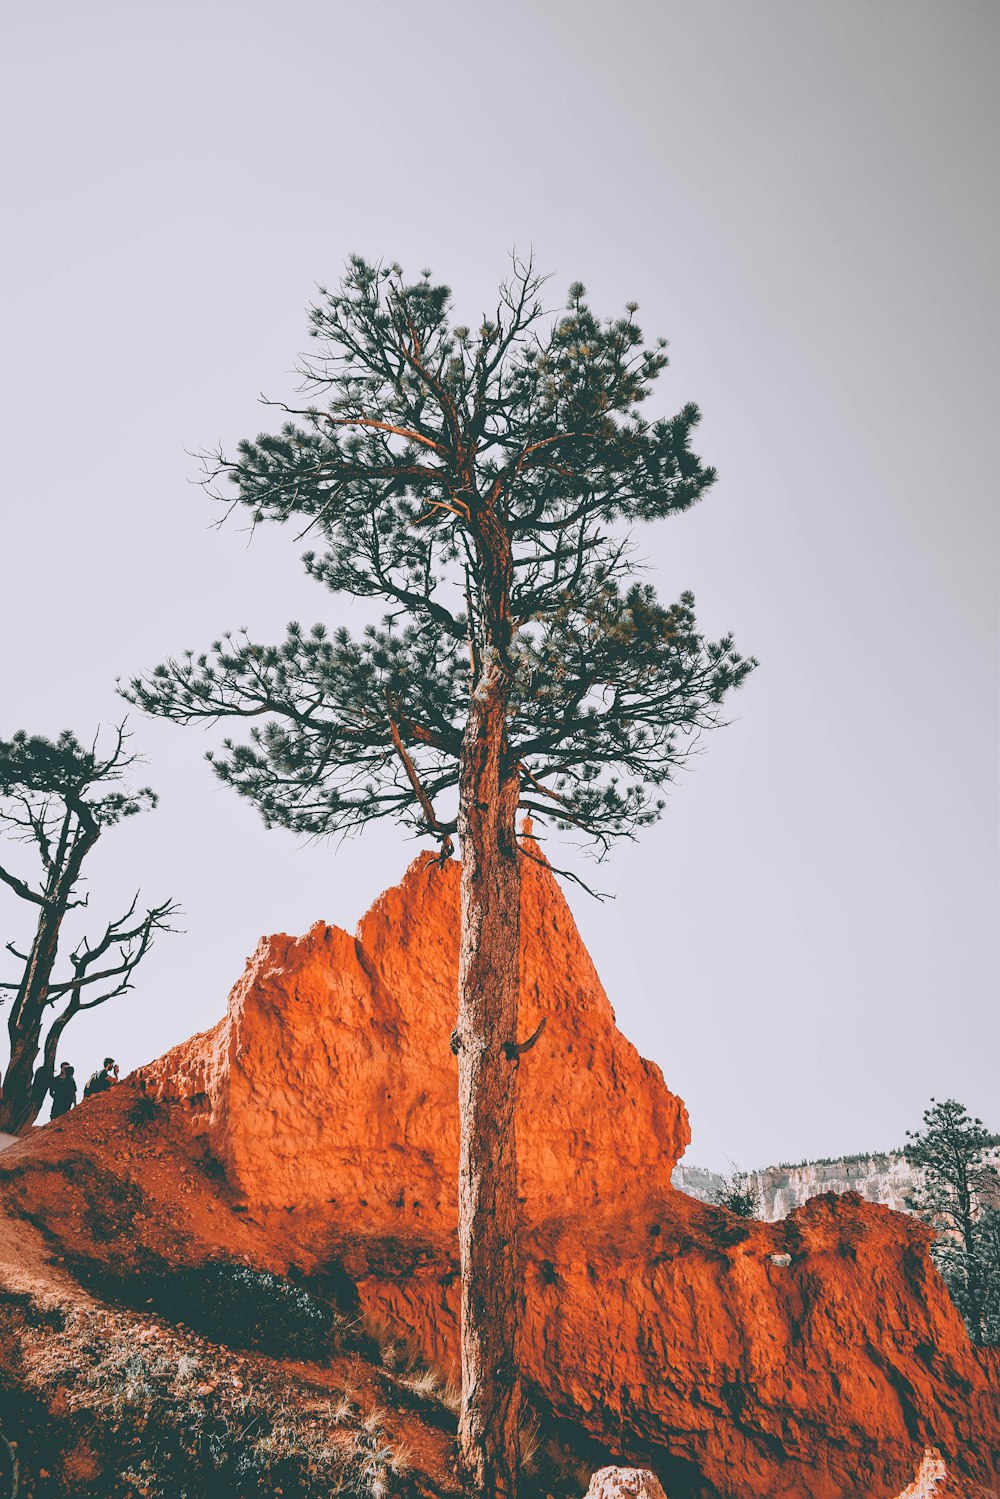 Fotografia selettiva di messa a fuoco dell'albero accanto alla collina